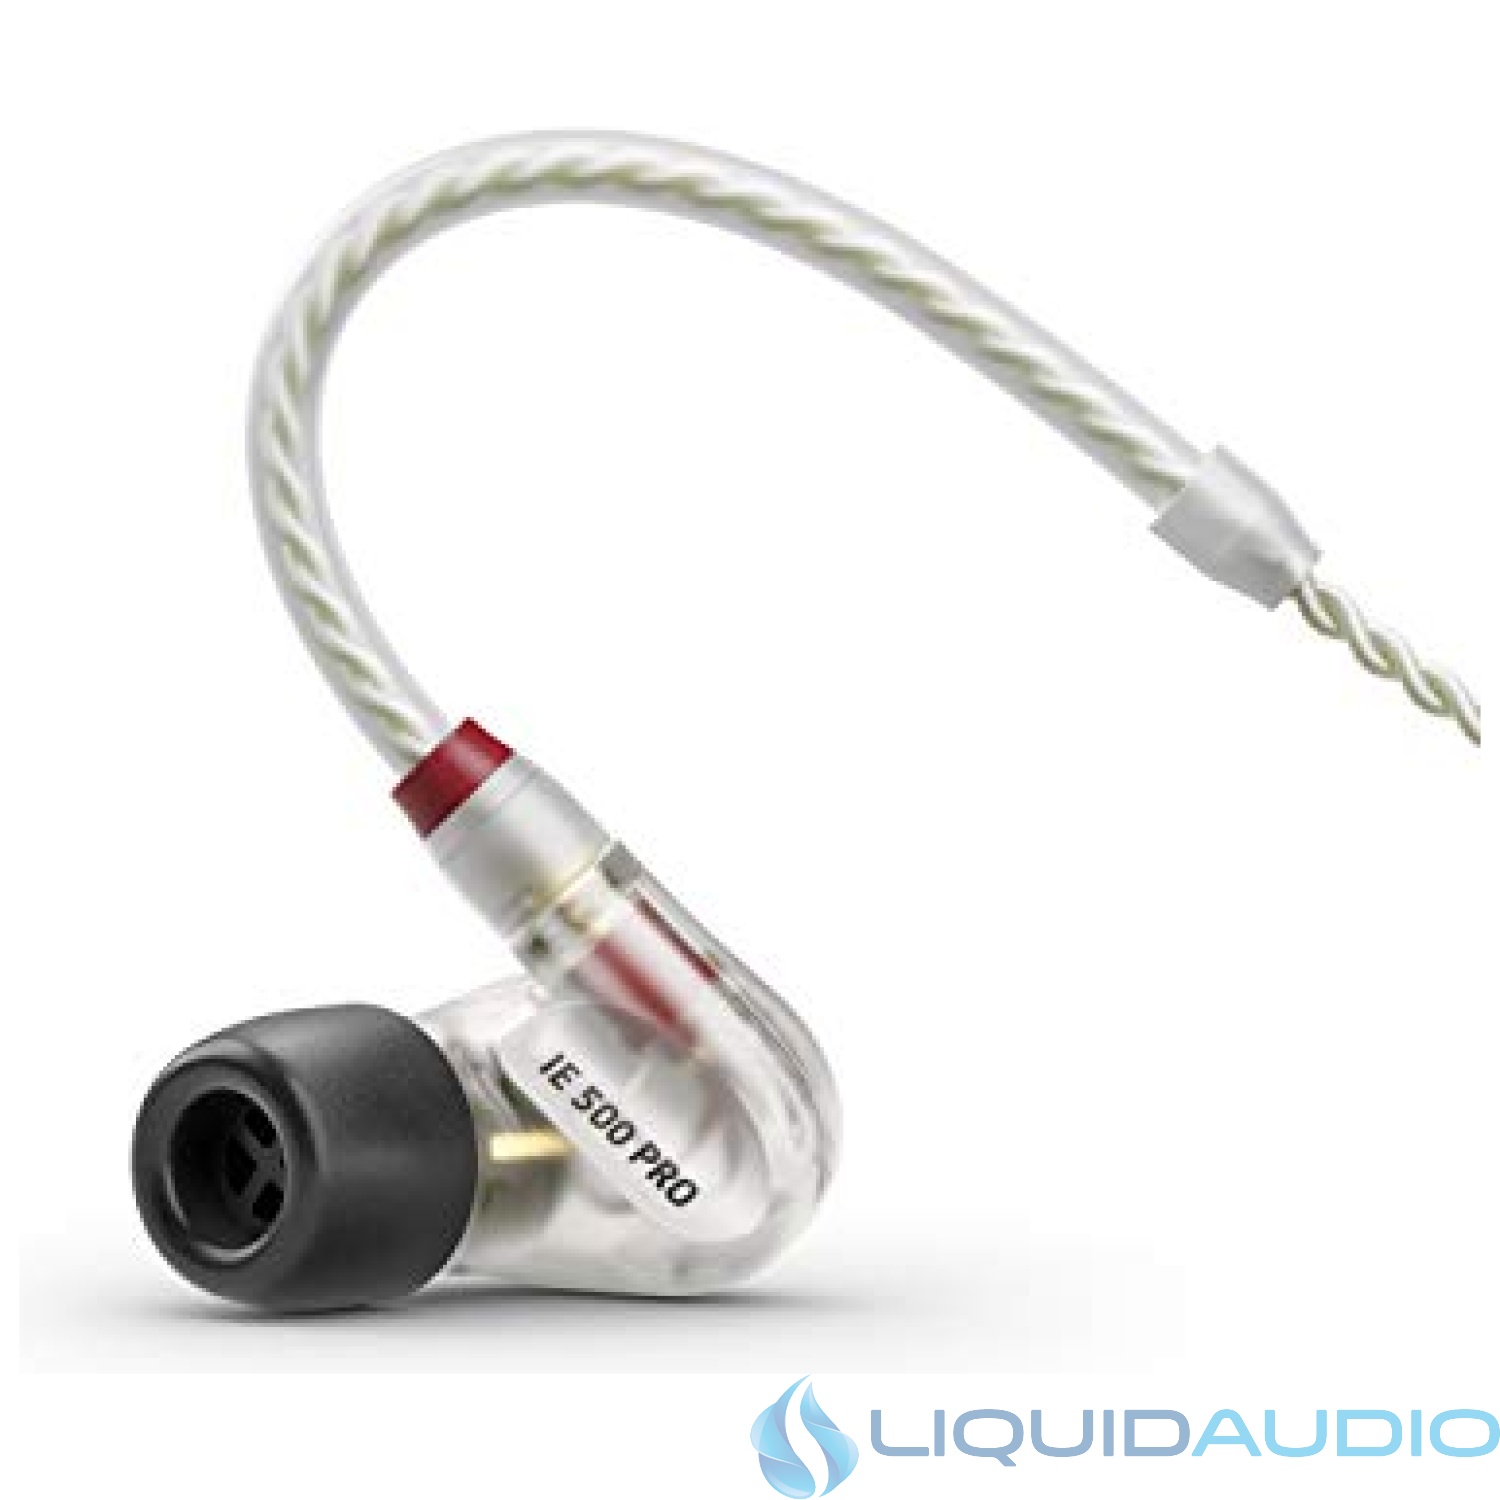 Sennheiser Pro Audio In-Ear Audio Monitor, (IE 500 PRO Clear)